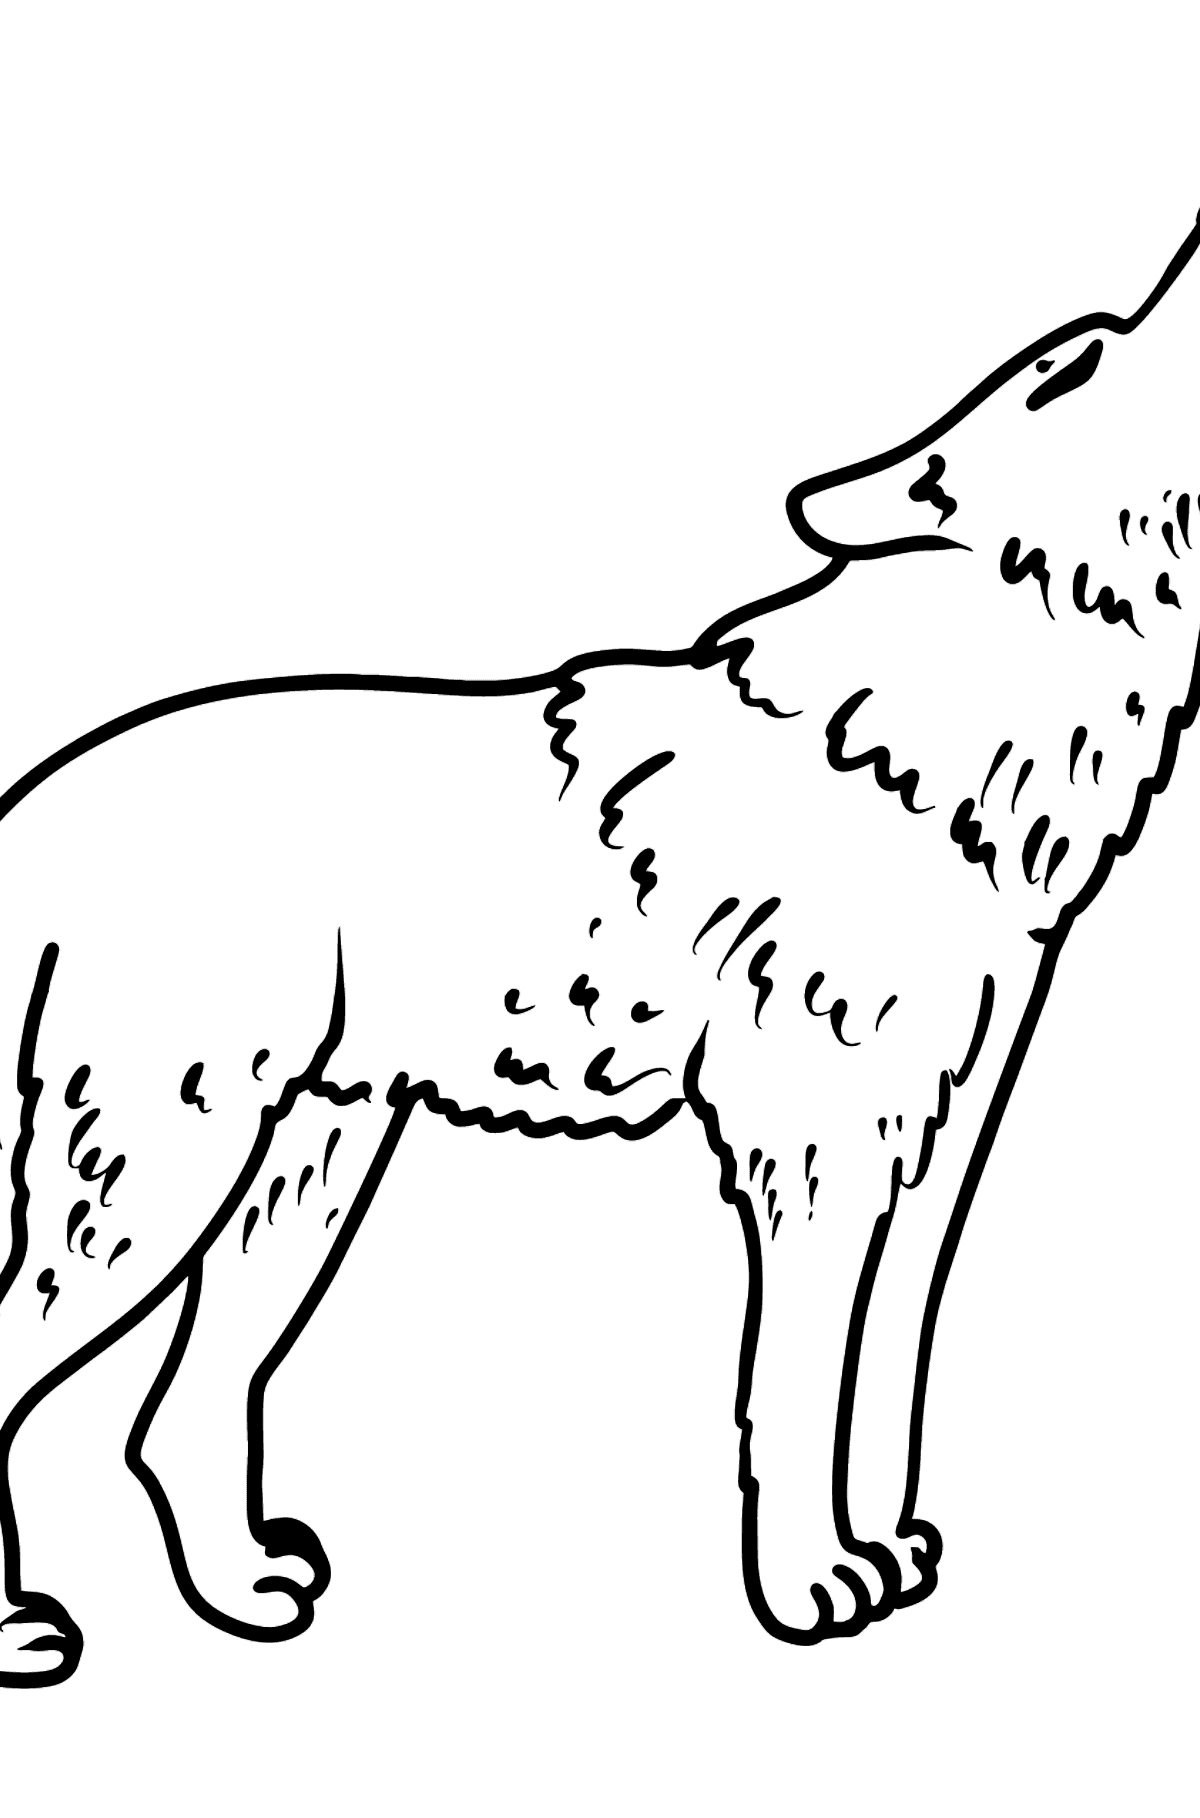 Tegning til fargelegging ulv - Tegninger til fargelegging for barn